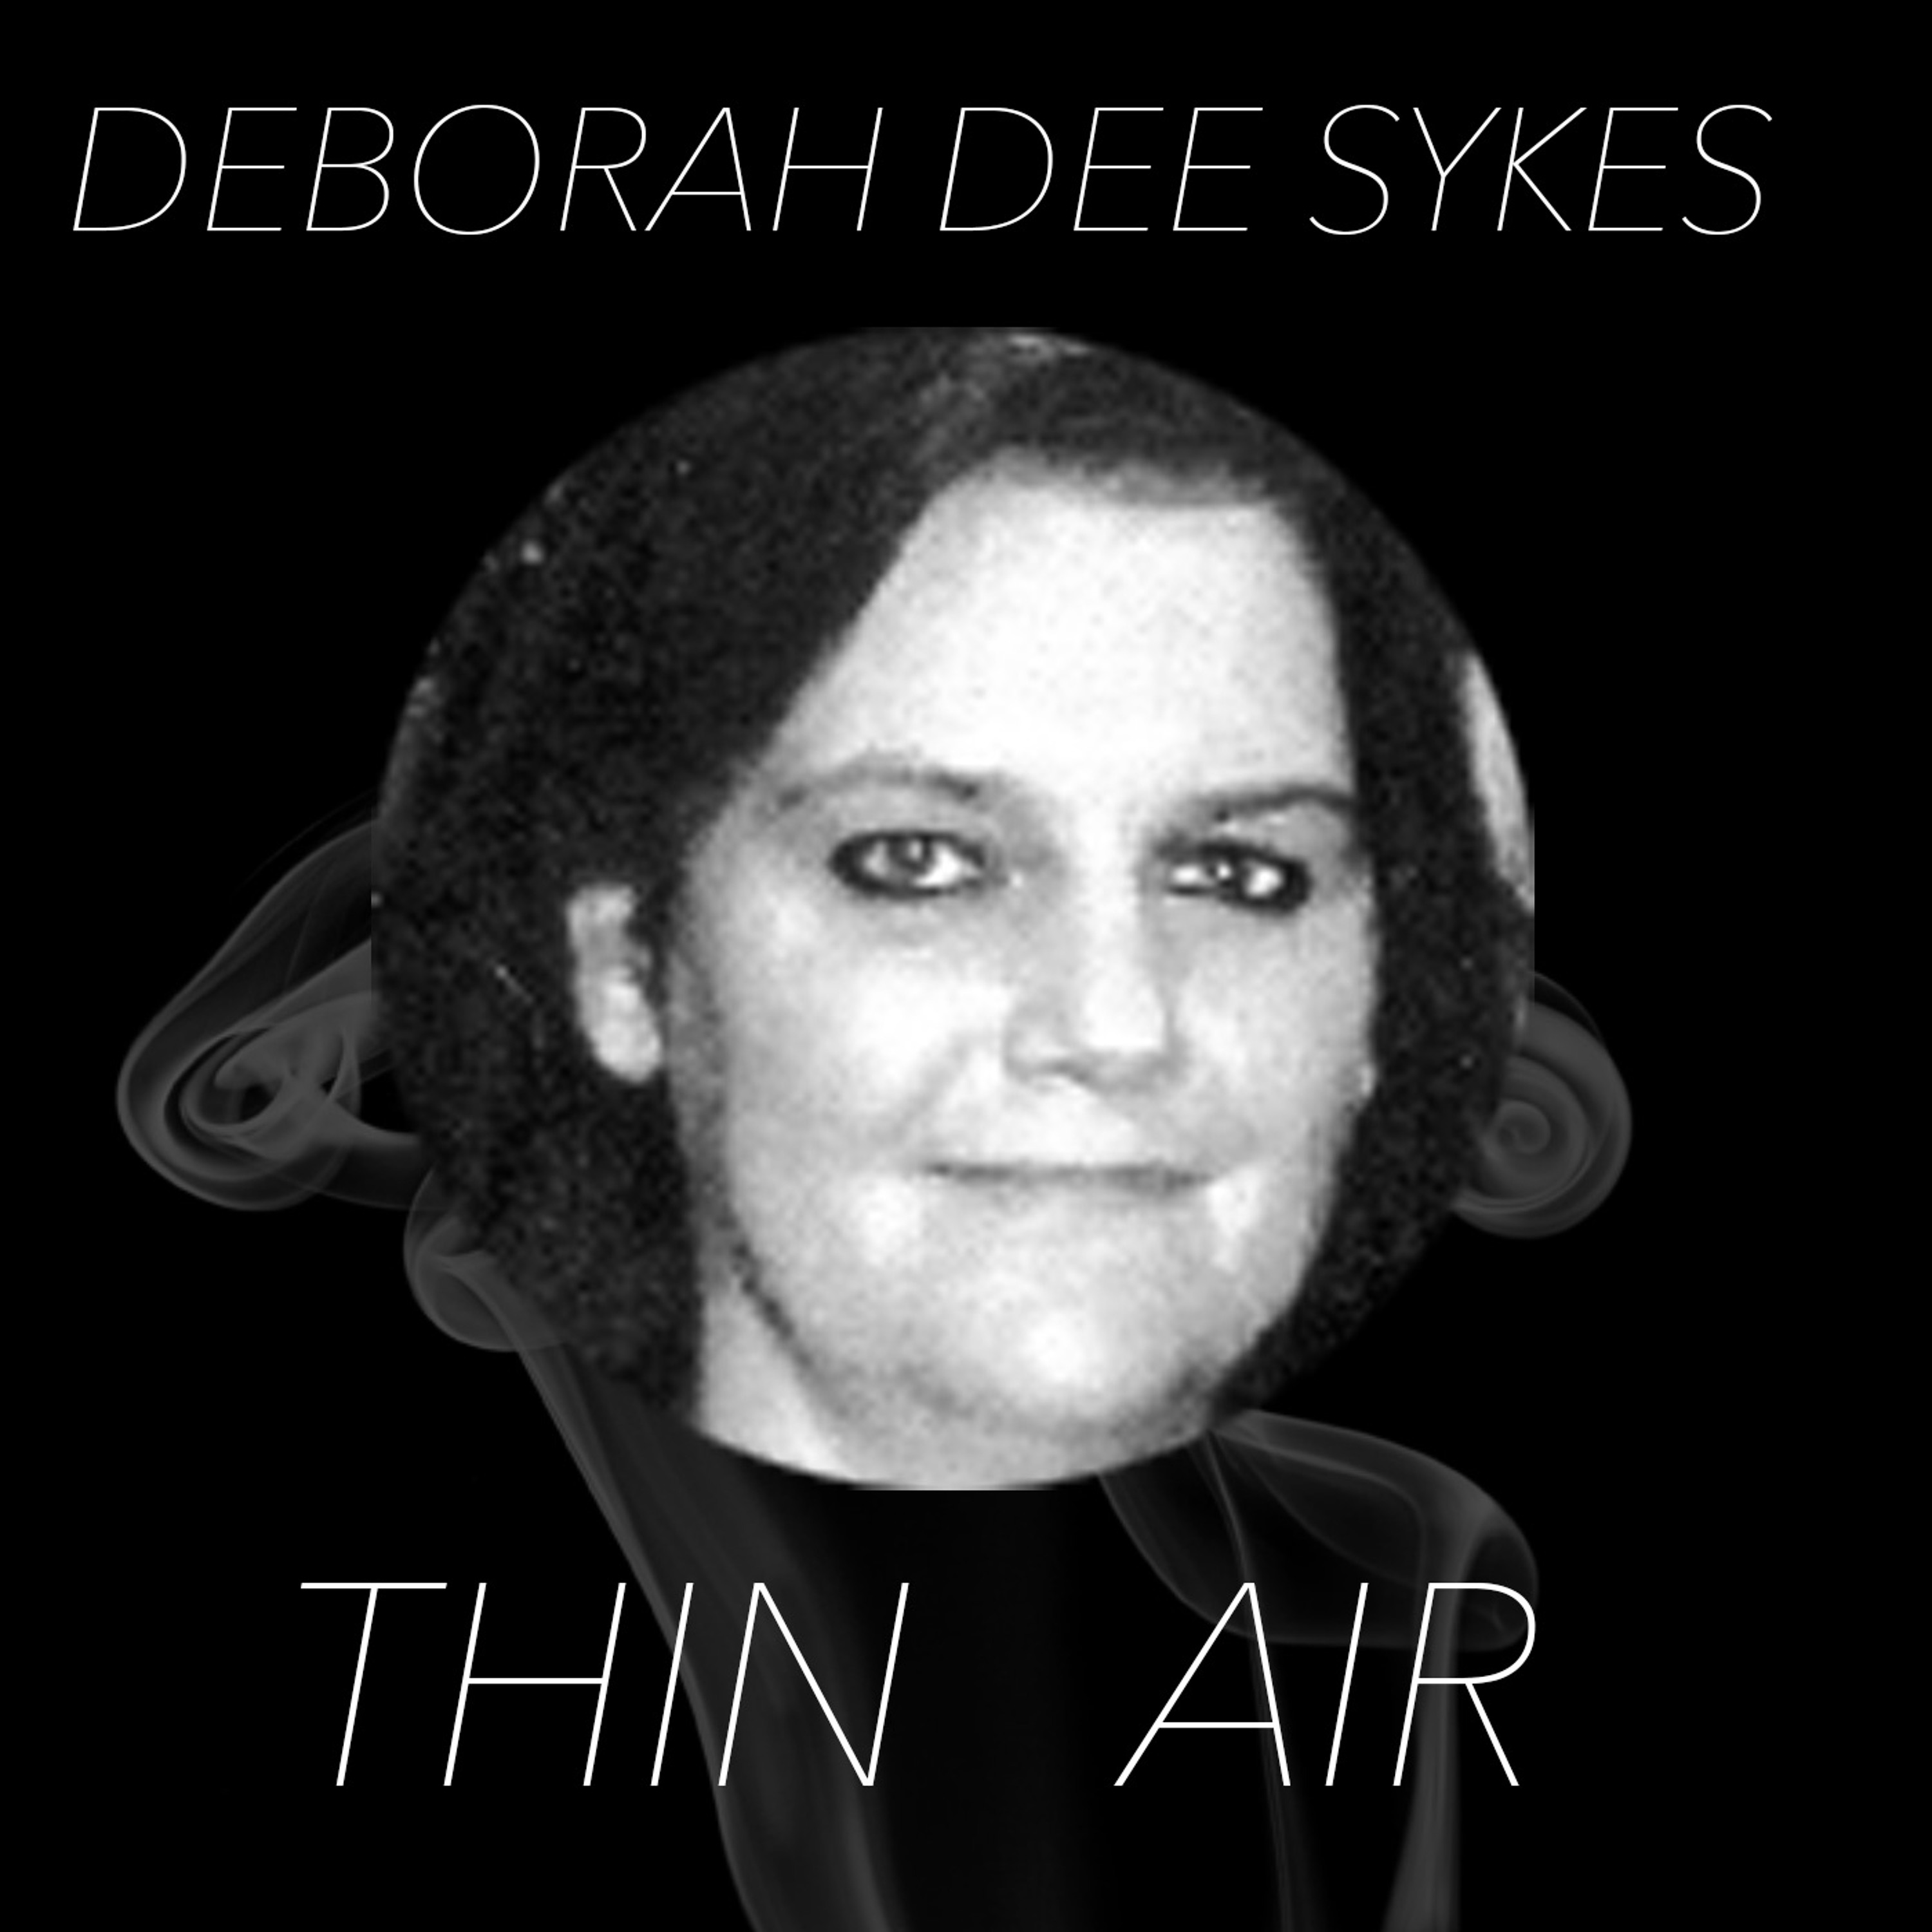 Episode 4 - Deborah Dee Sykes